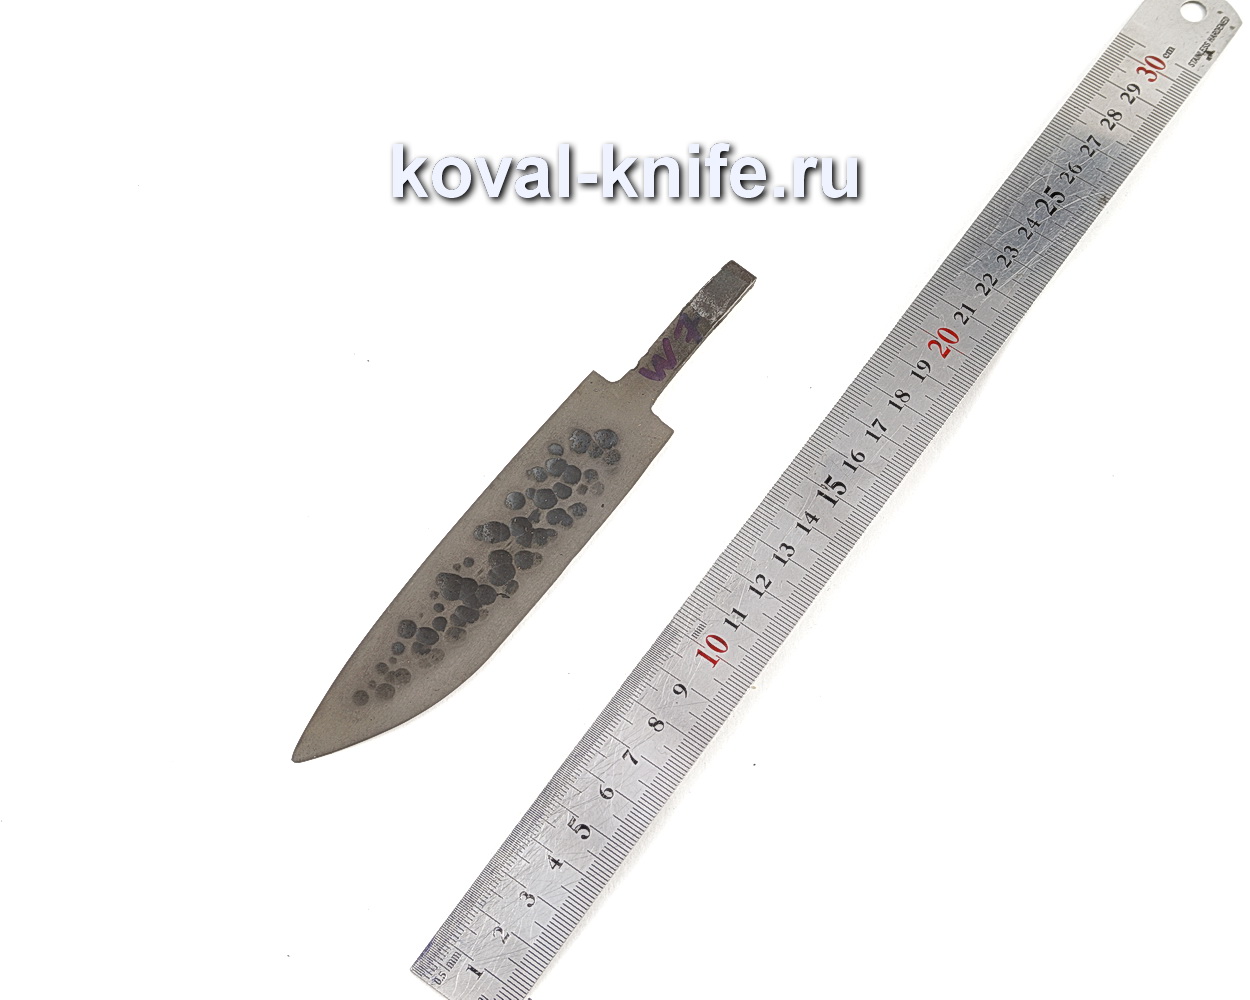 купить клинок для ножа от Кузницы Коваль